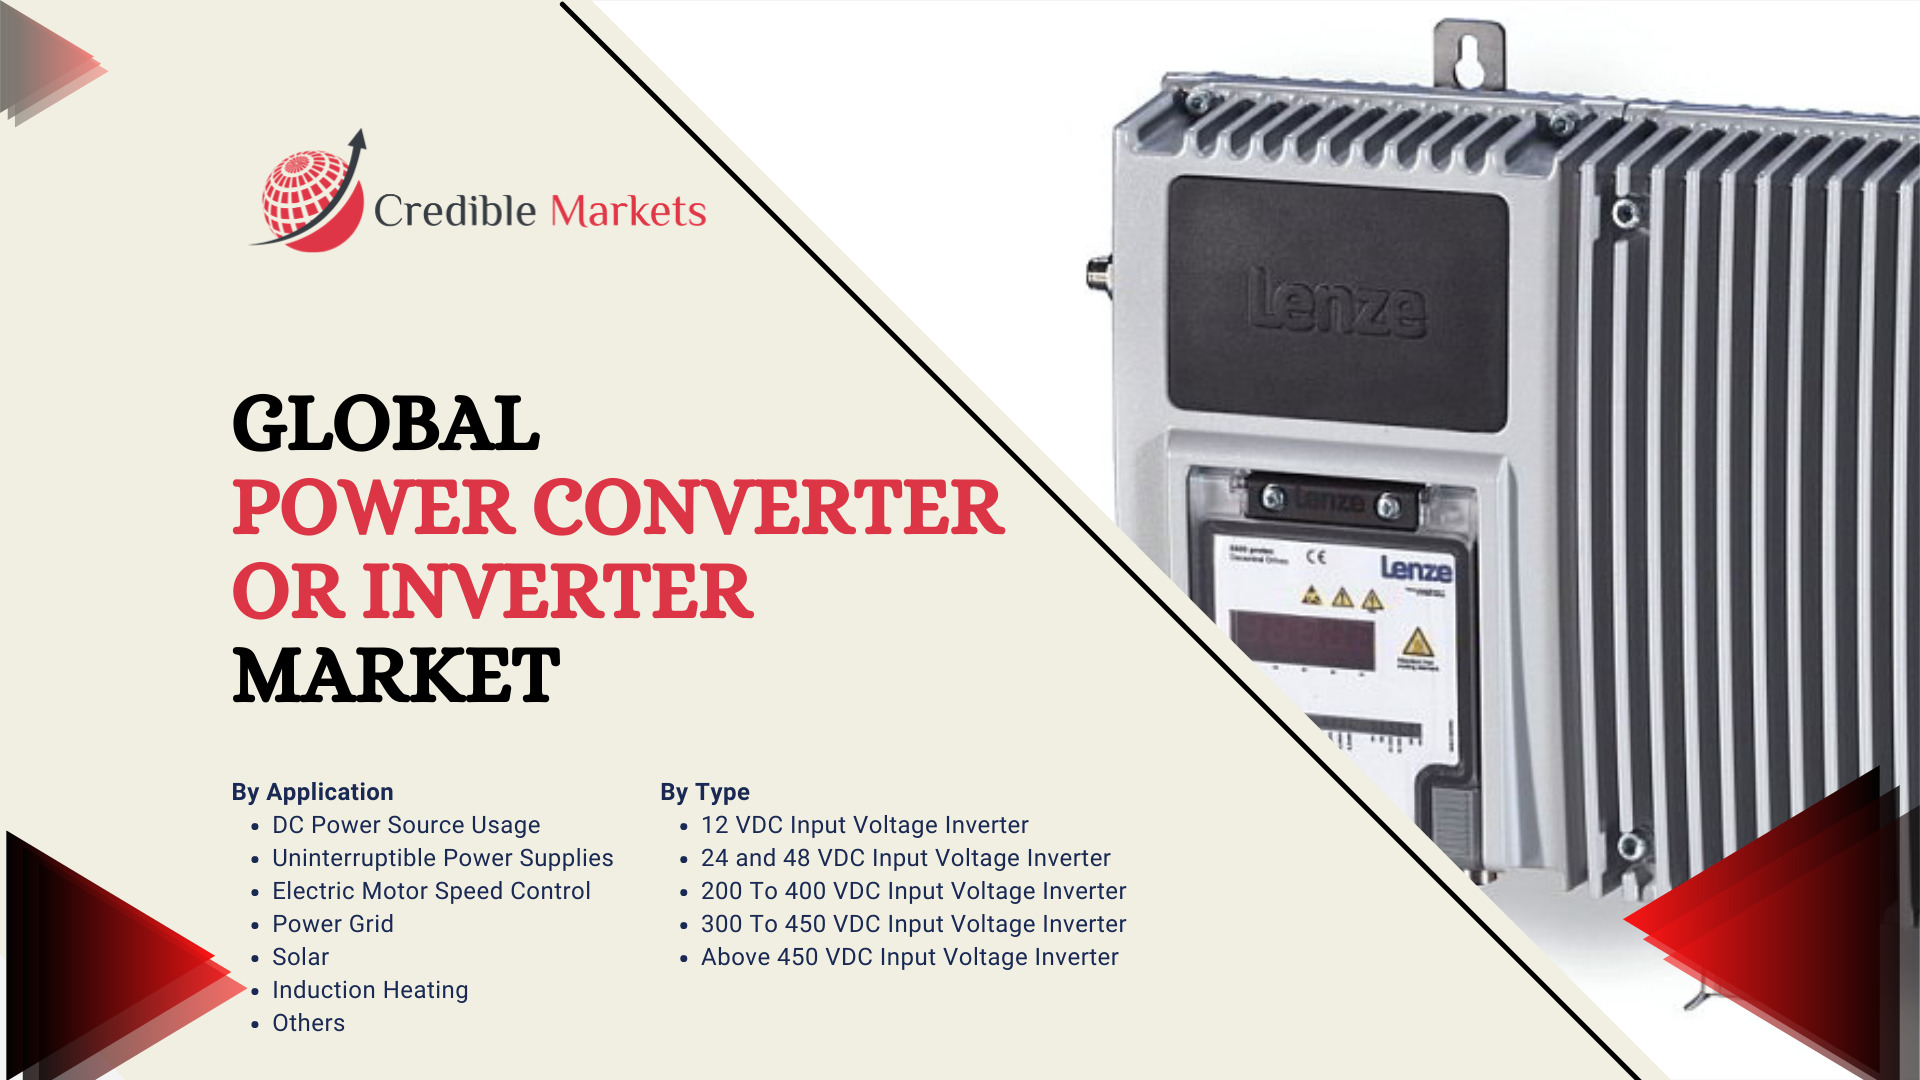 Power Converter or Inverter Market